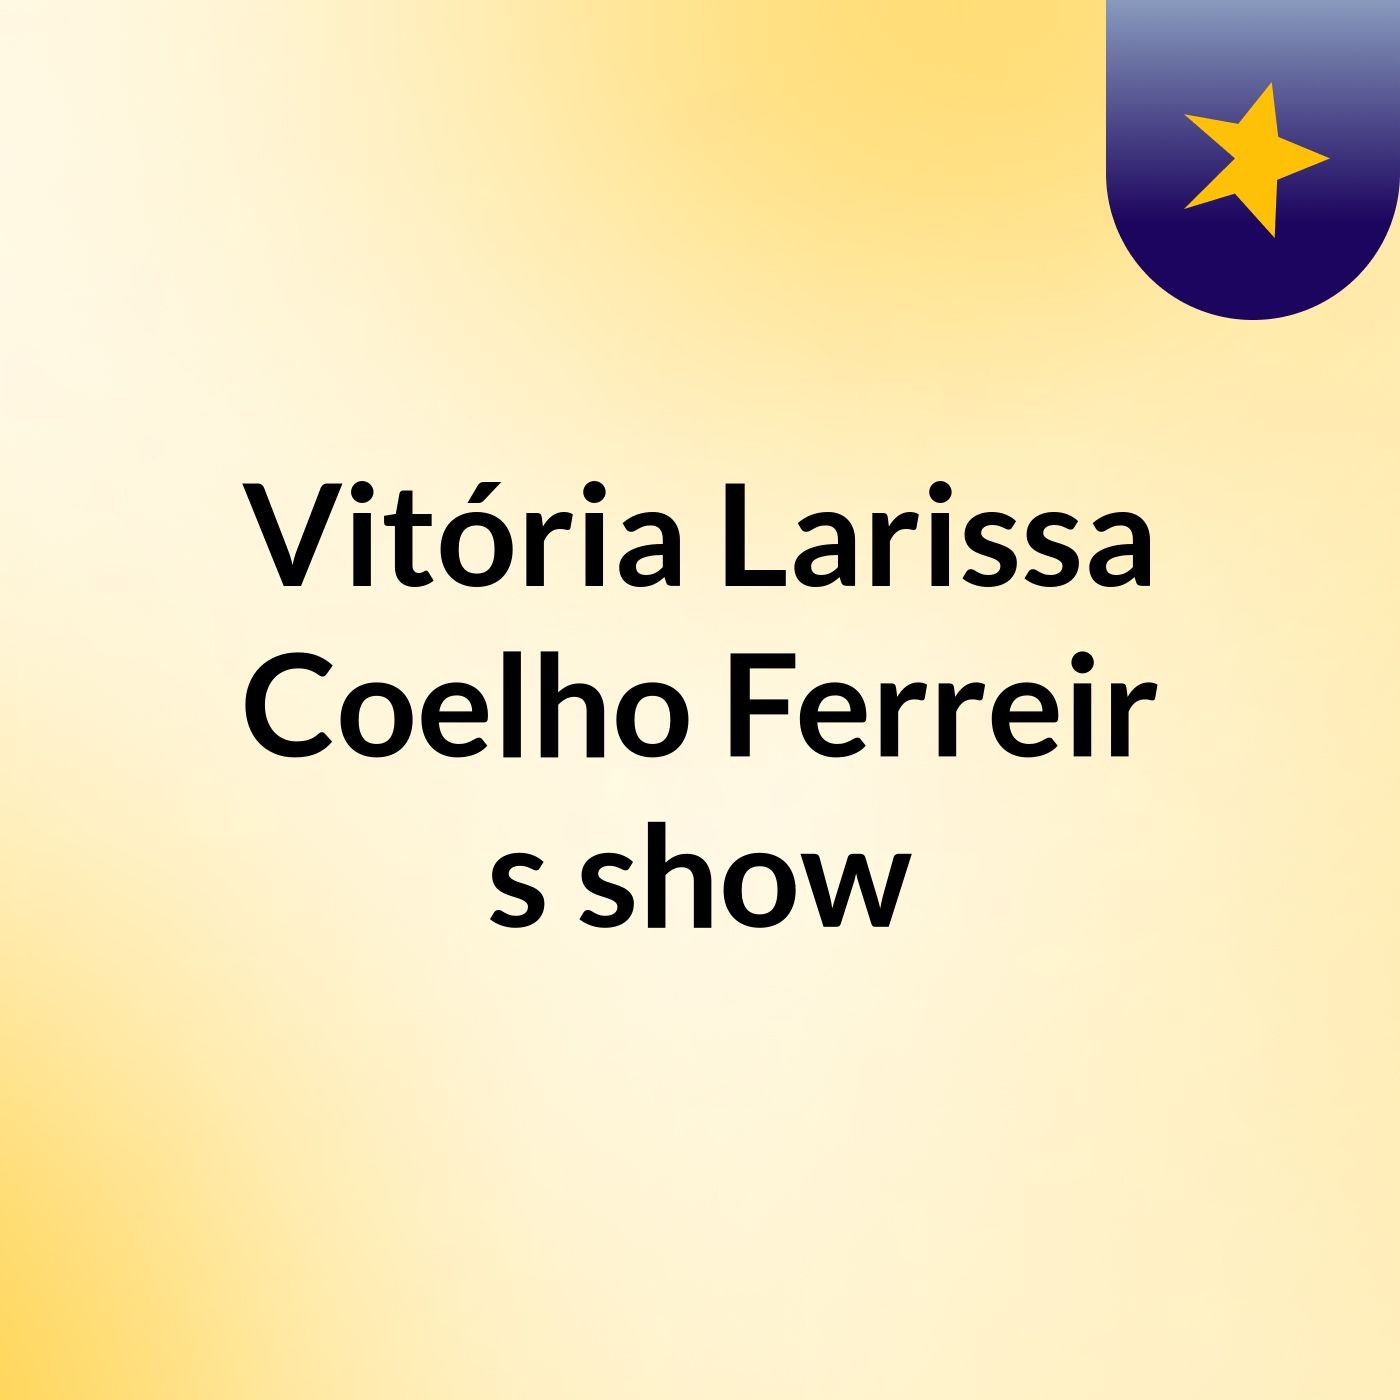 Vitória Larissa Coelho Ferreir's show